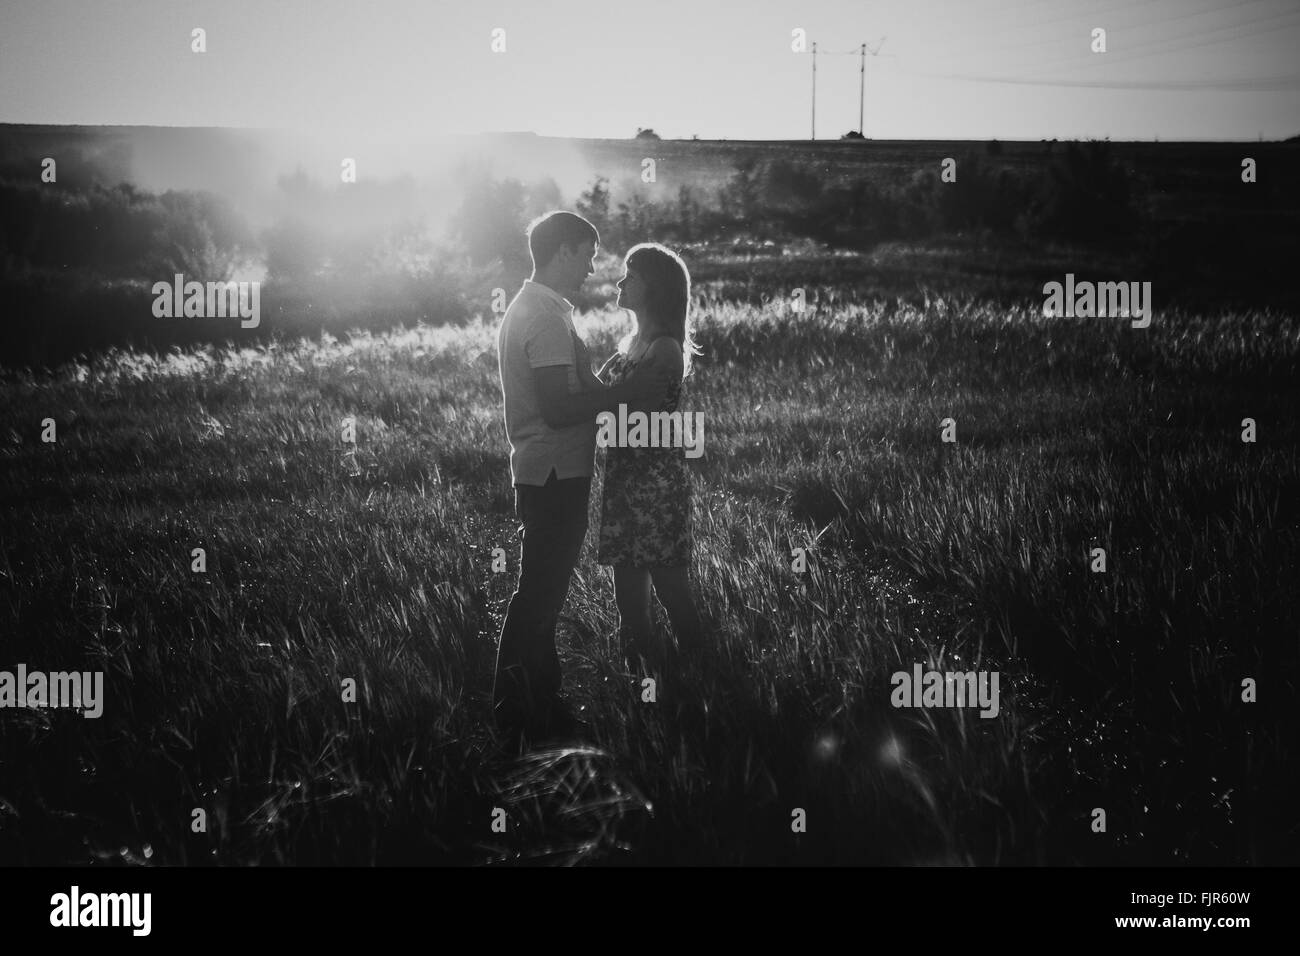 Bianco nero fotografia coppia romantica in piedi e baciare su sfondo prato estivo tramonto Foto Stock